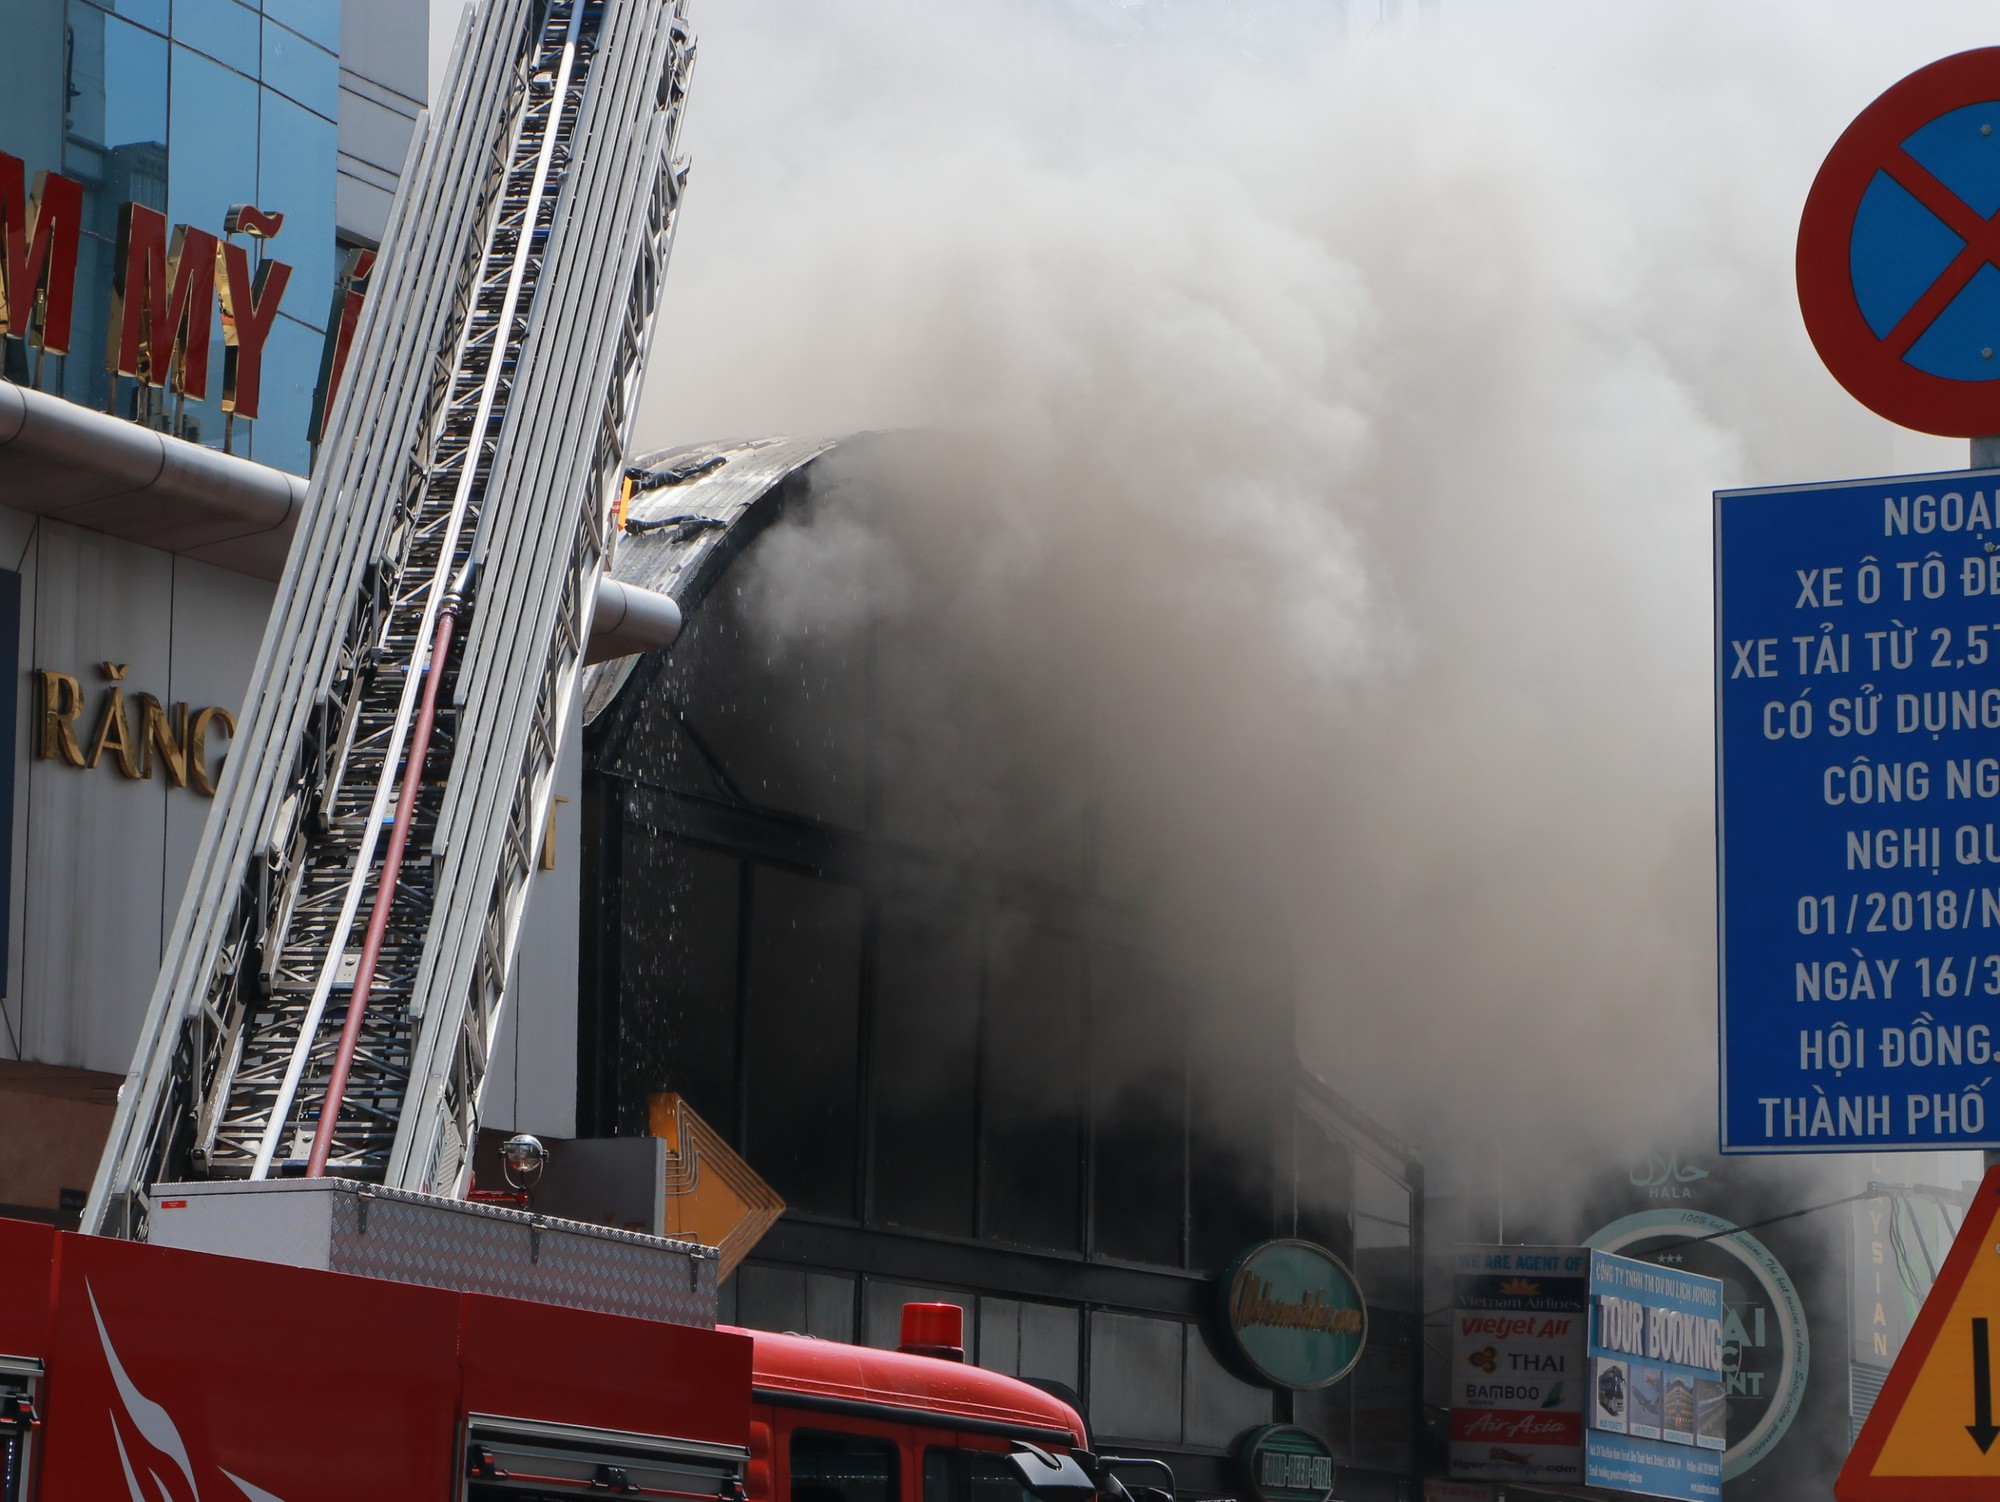 Hiện trường vụ cháy lớn một quán bar gần chợ Bến Thành: Không có thương vong, khói đen vẫn bốc nghi ngút - Ảnh 6.